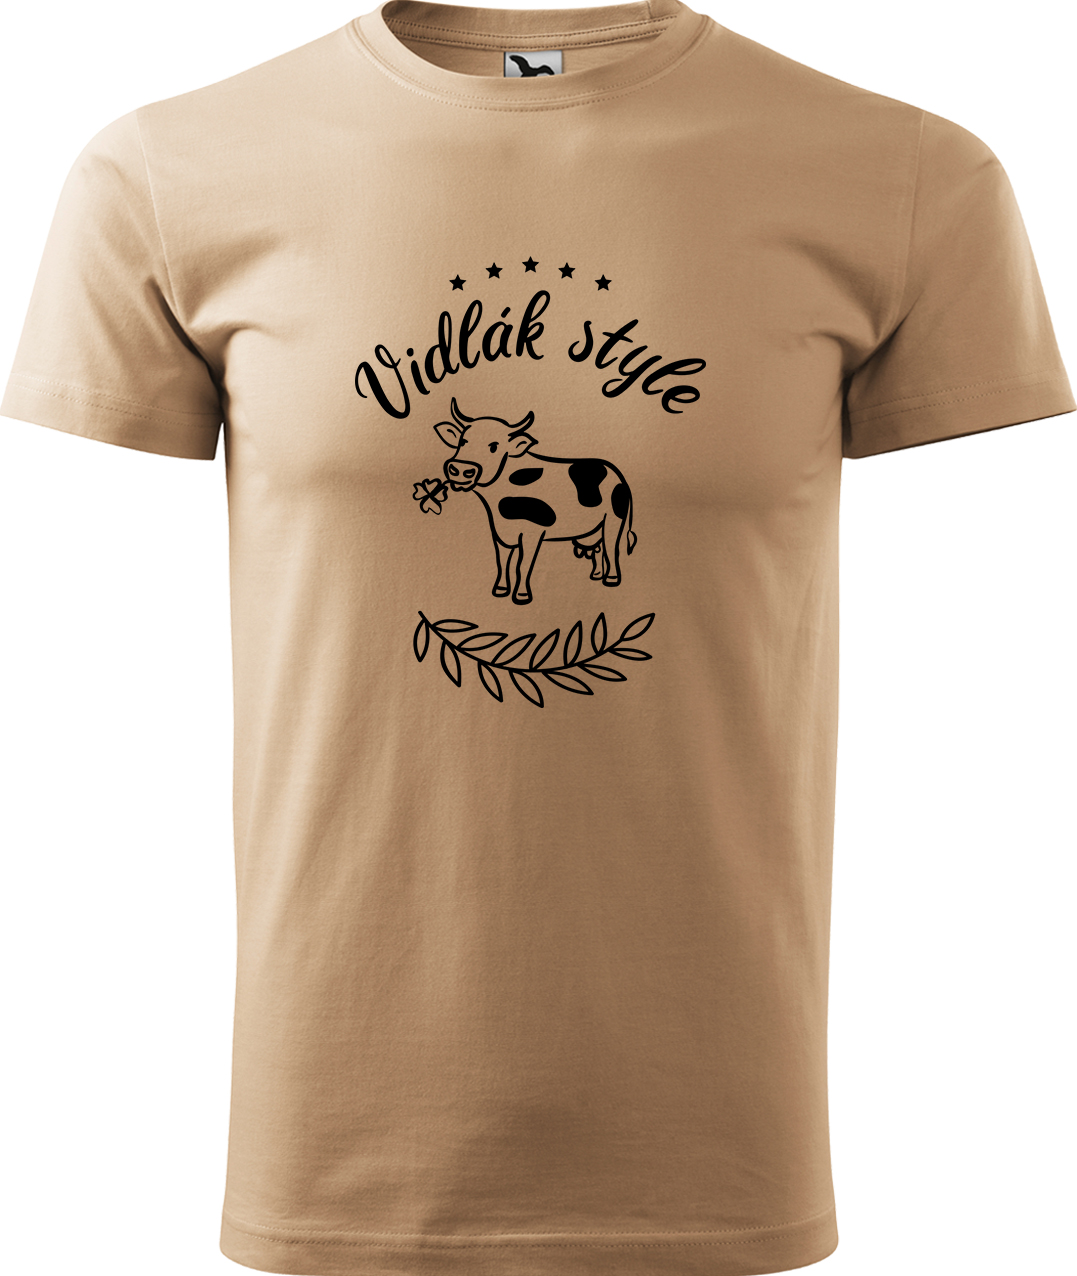 Pánské tričko s krávou - Vidlák style Velikost: XL, Barva: Písková (08), Střih: pánský